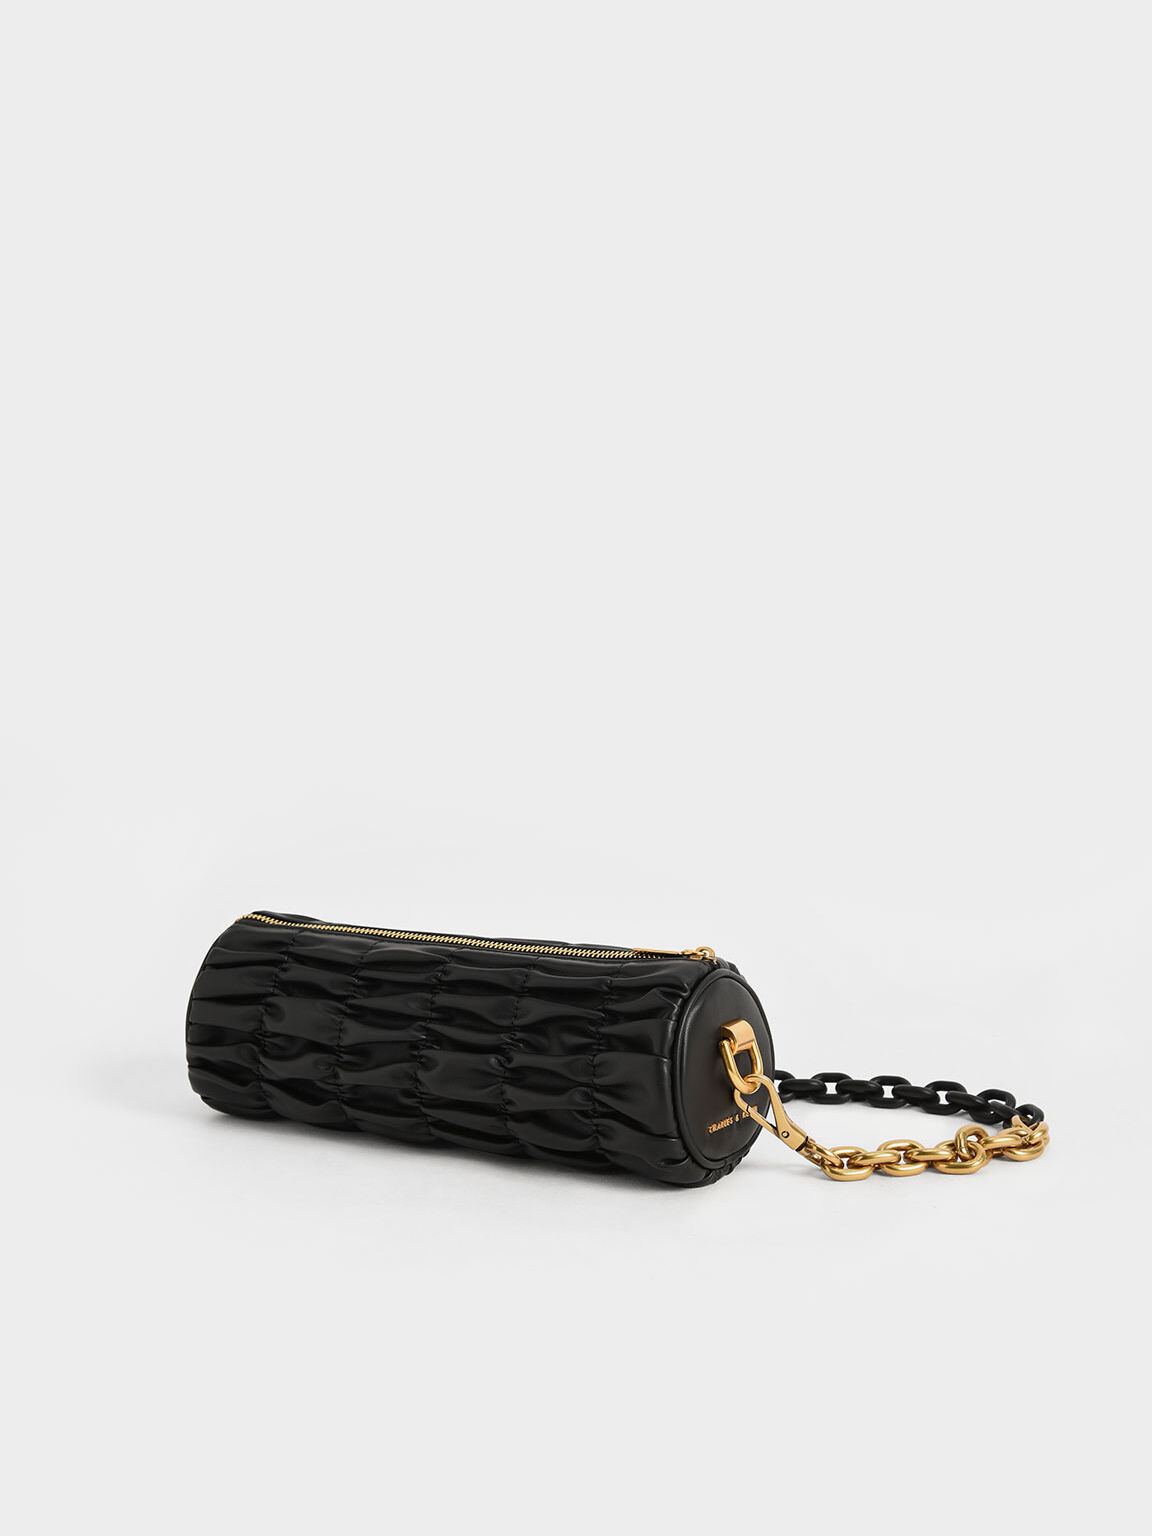 Tallulah Ruched Chain-Handle Shoulder Bag, Black, hi-res